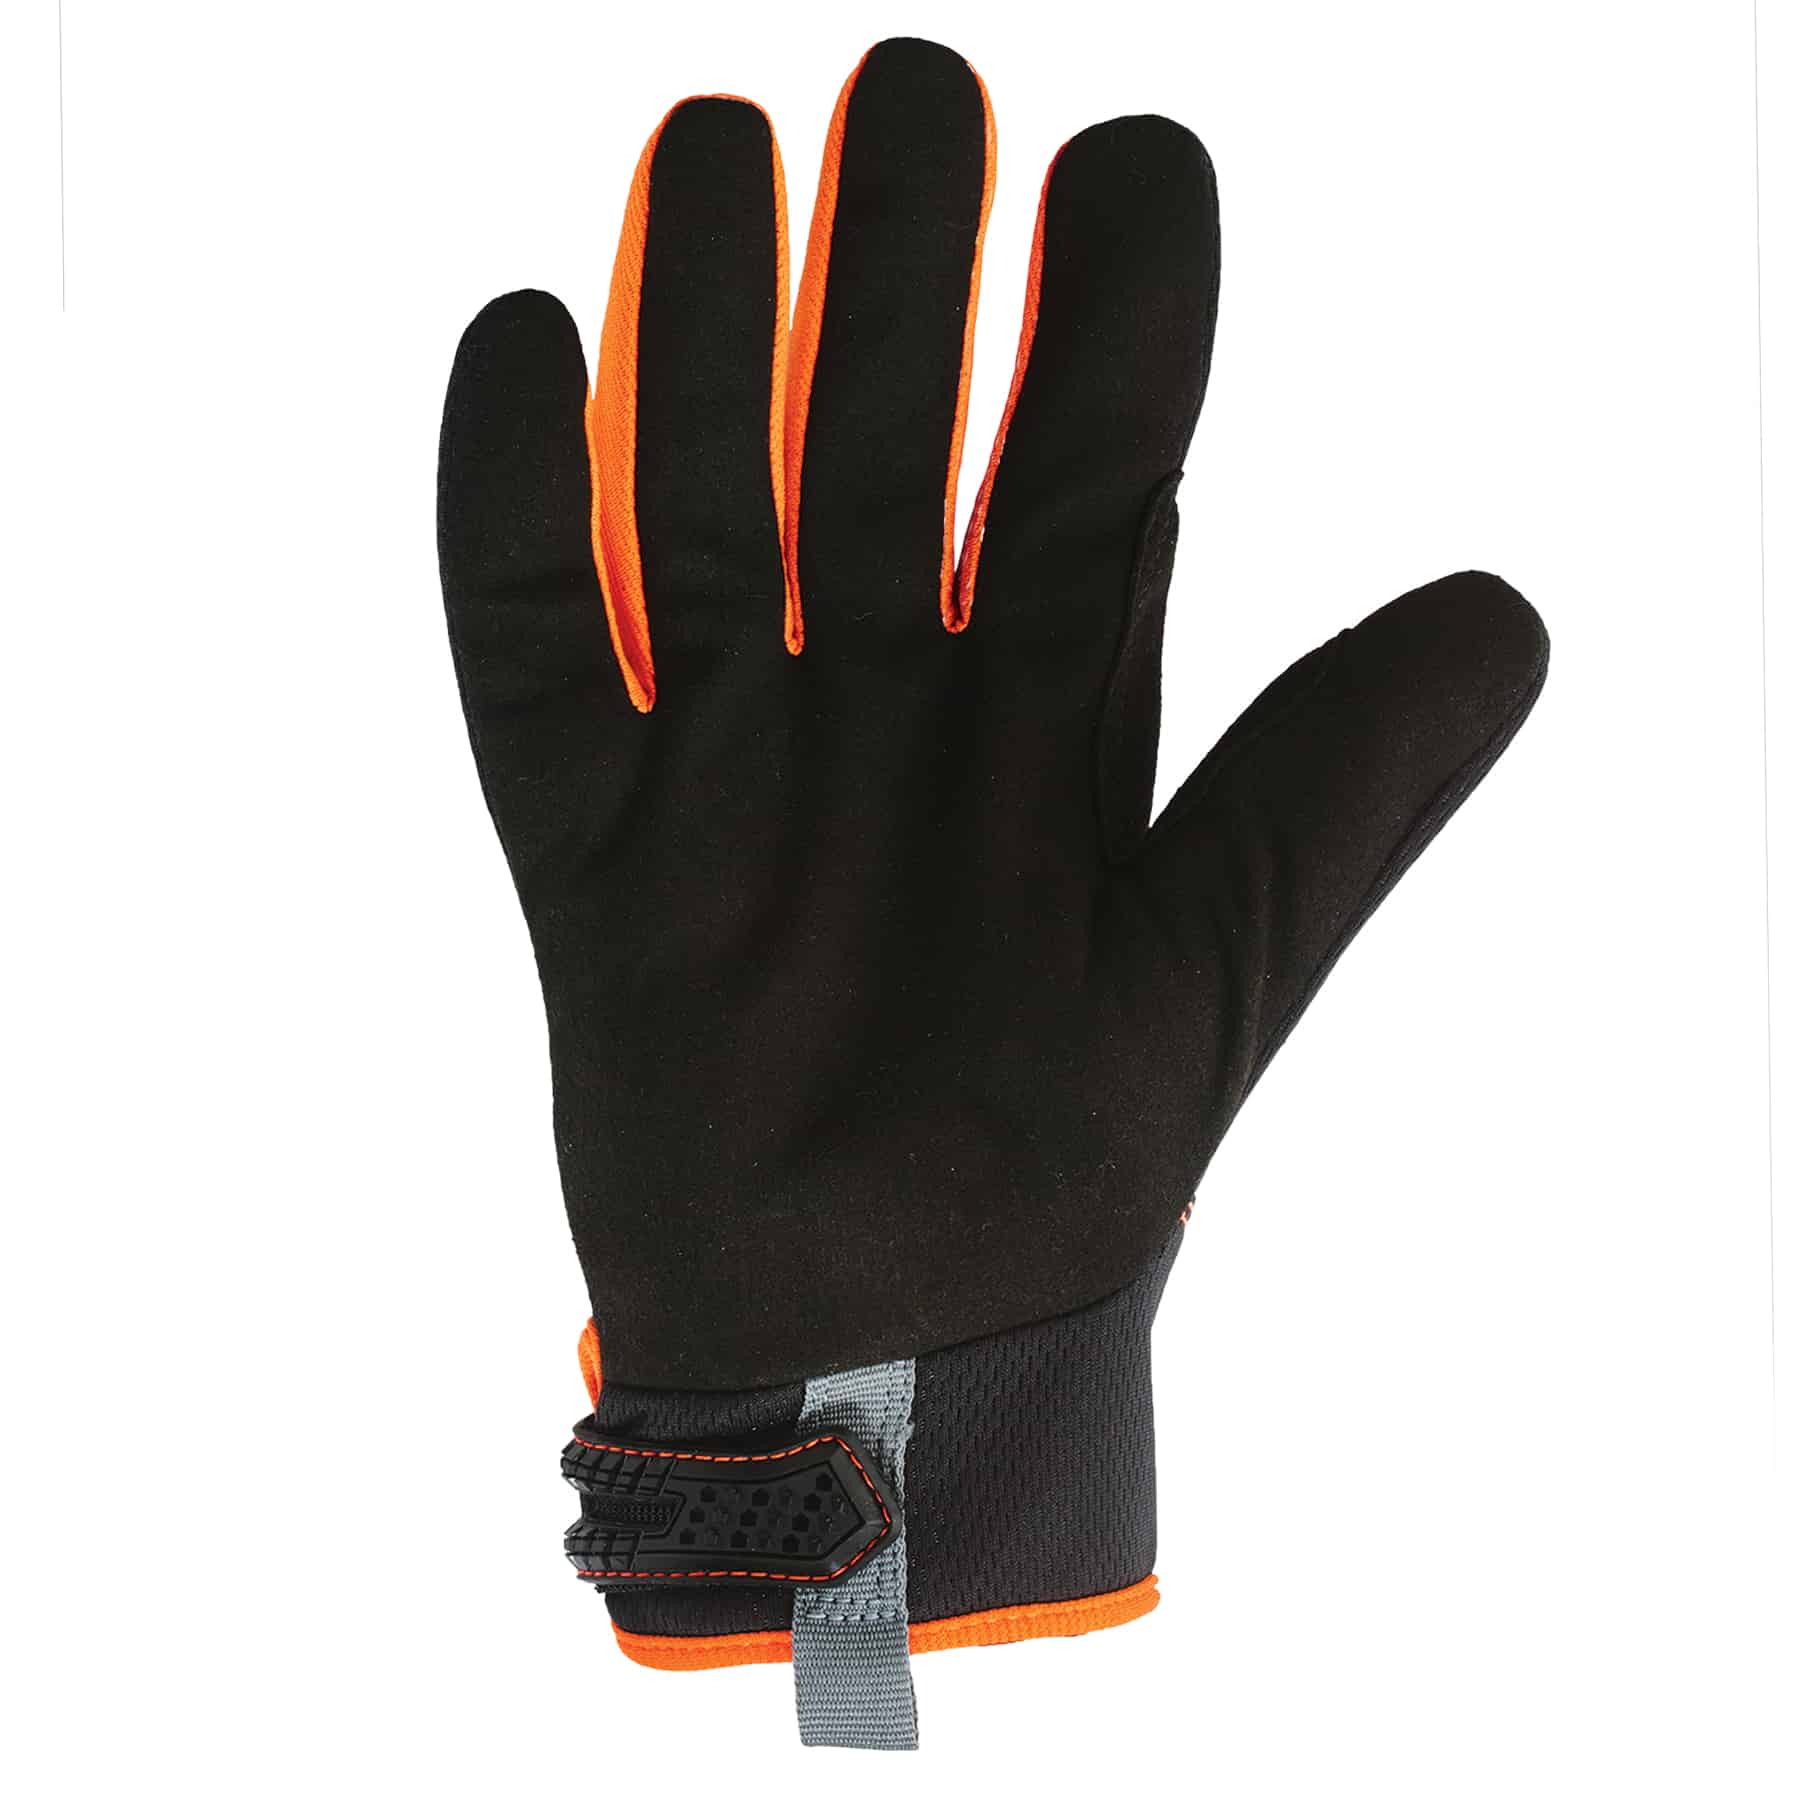 Standard Mechanics Gloves